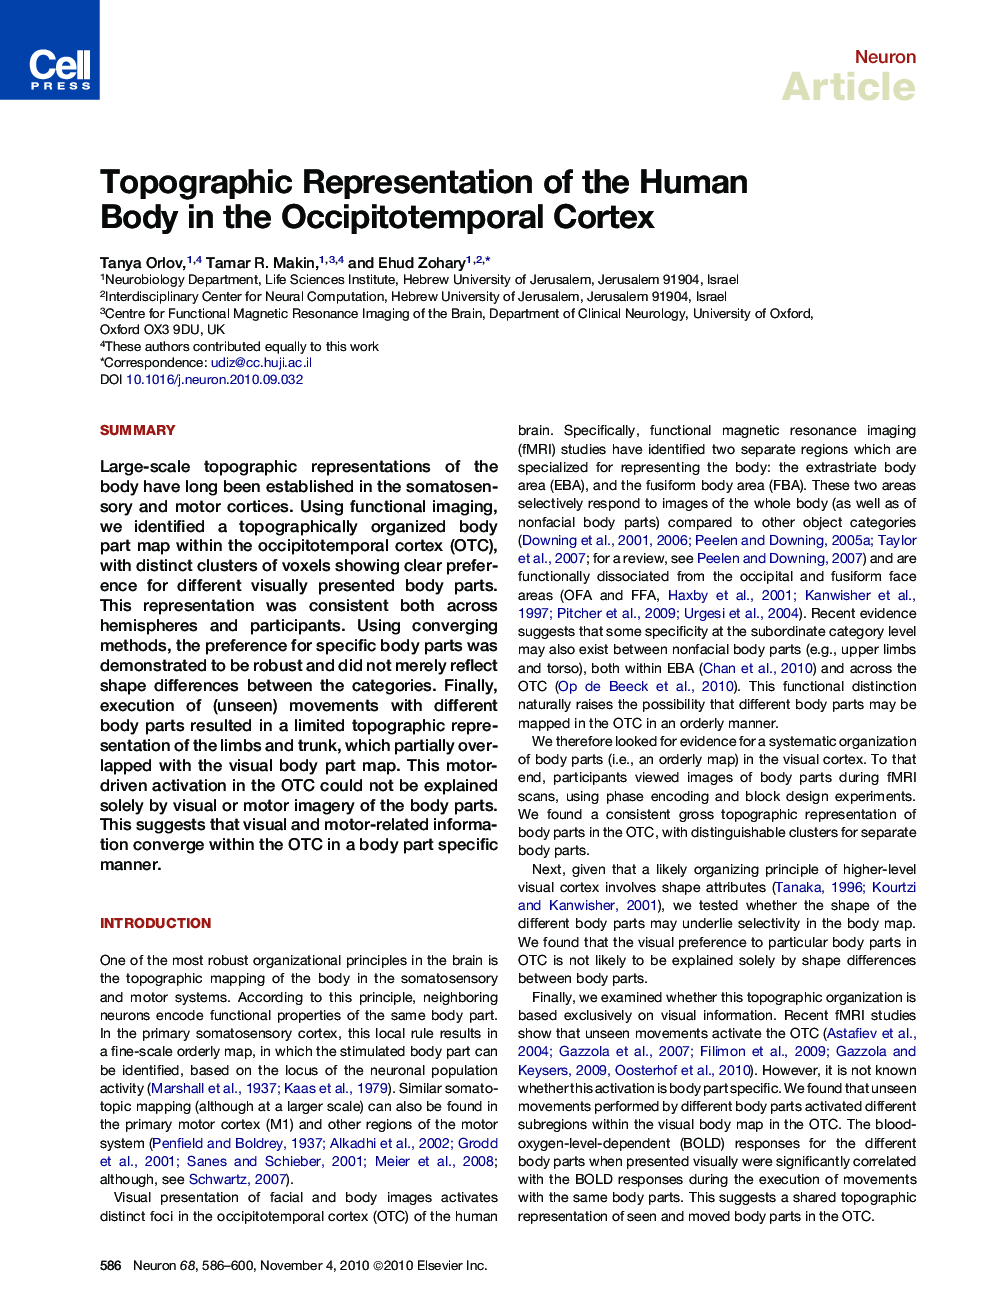 Topographic Representation of the Human Body in the Occipitotemporal Cortex